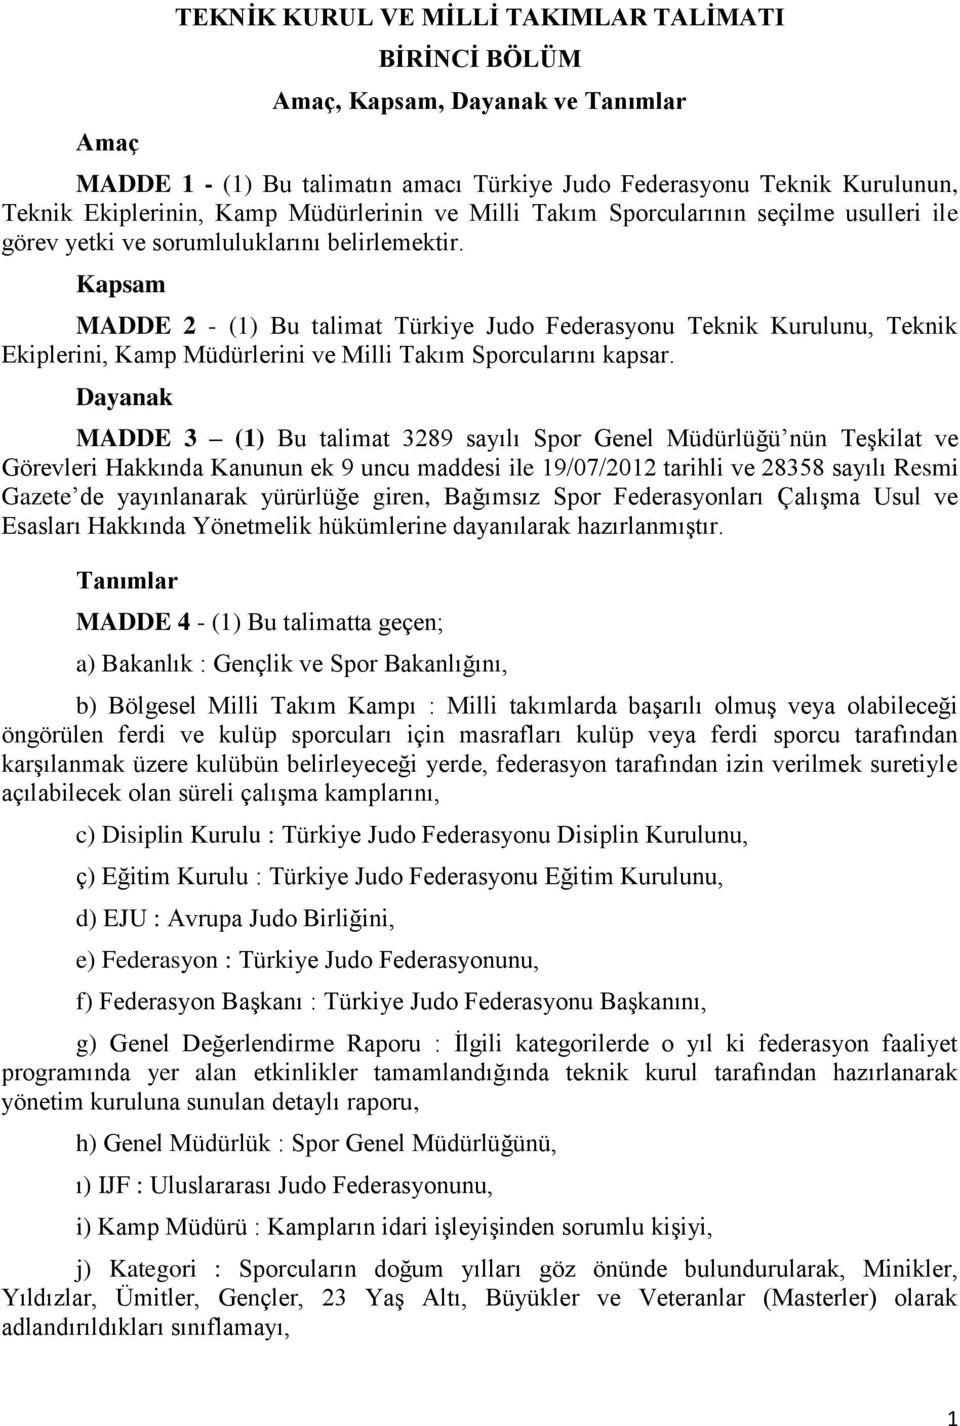 Kapsam MADDE 2 - (1) Bu talimat Türkiye Judo Federasyonu Teknik Kurulunu, Teknik Ekiplerini, Kamp Müdürlerini ve Milli Takım Sporcularını kapsar.